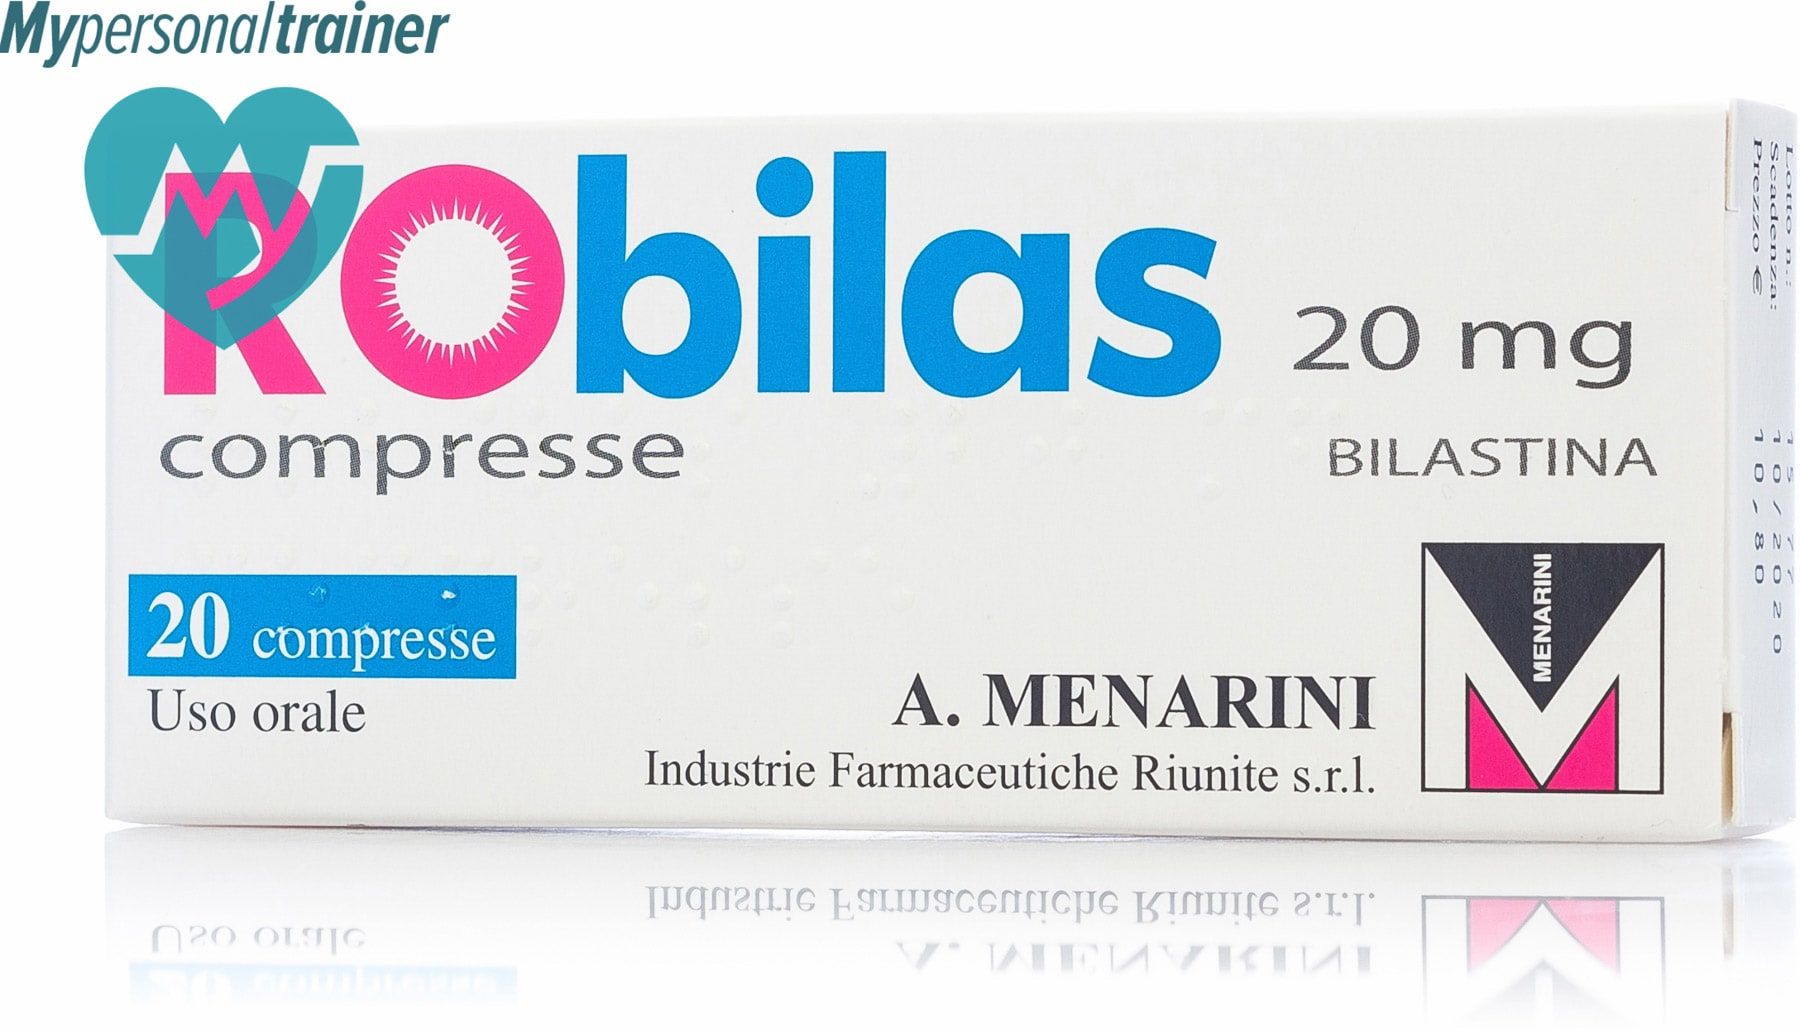 ¿Qué es Robilas 20 mg?